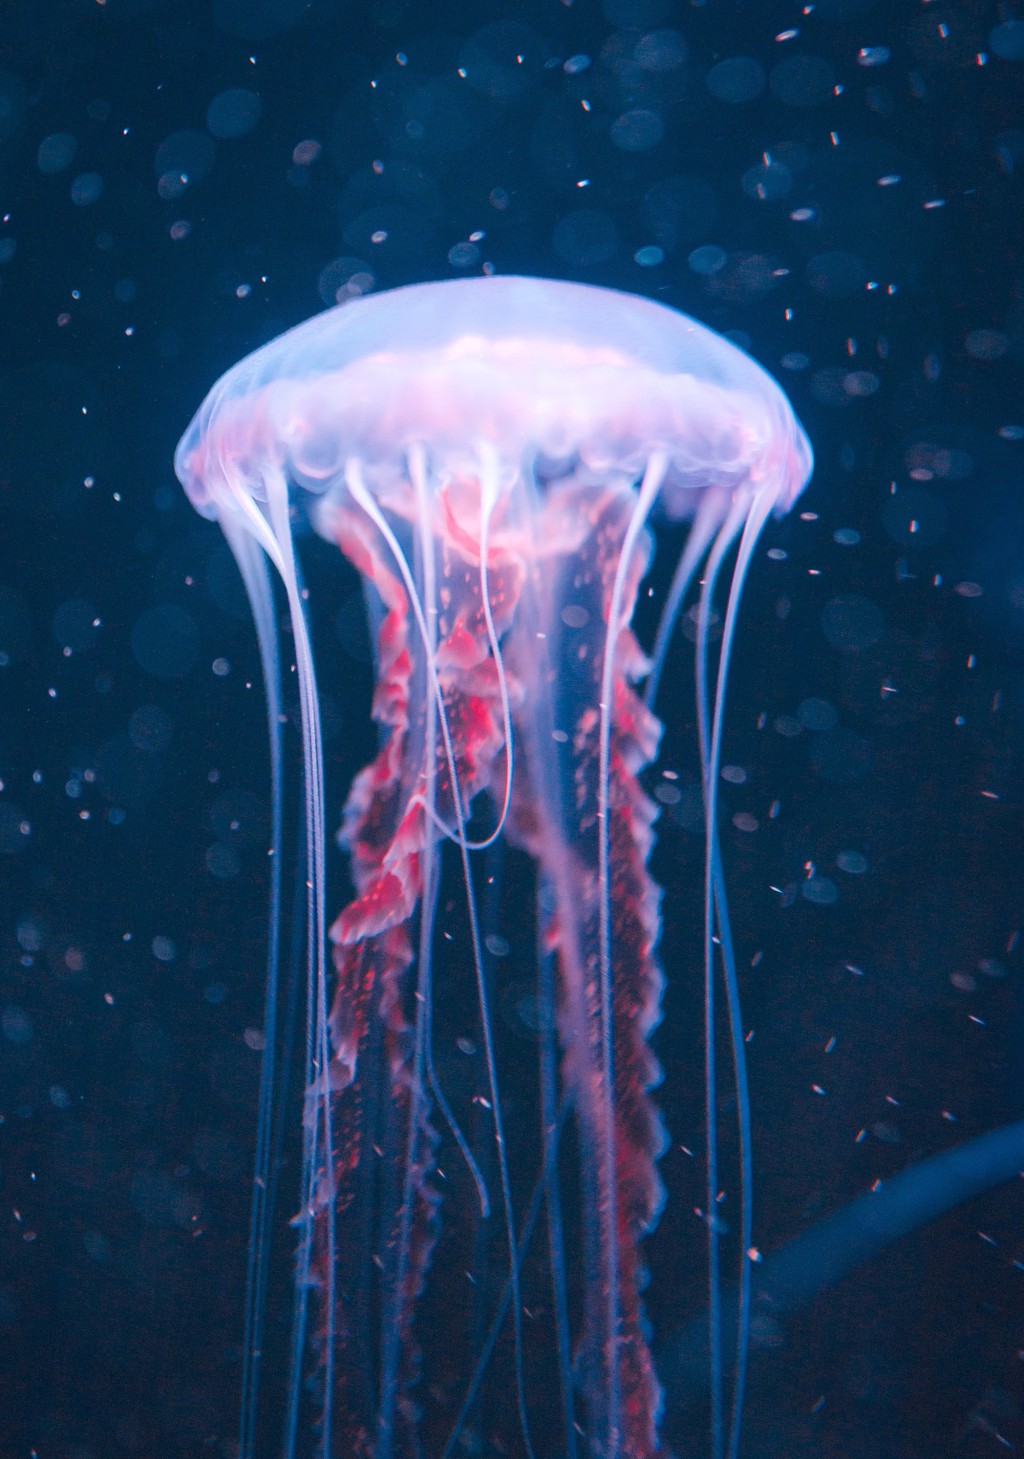 最大展区水母世界，展出多达20种水母，特设变色光效令水母随色转换绽放异彩。